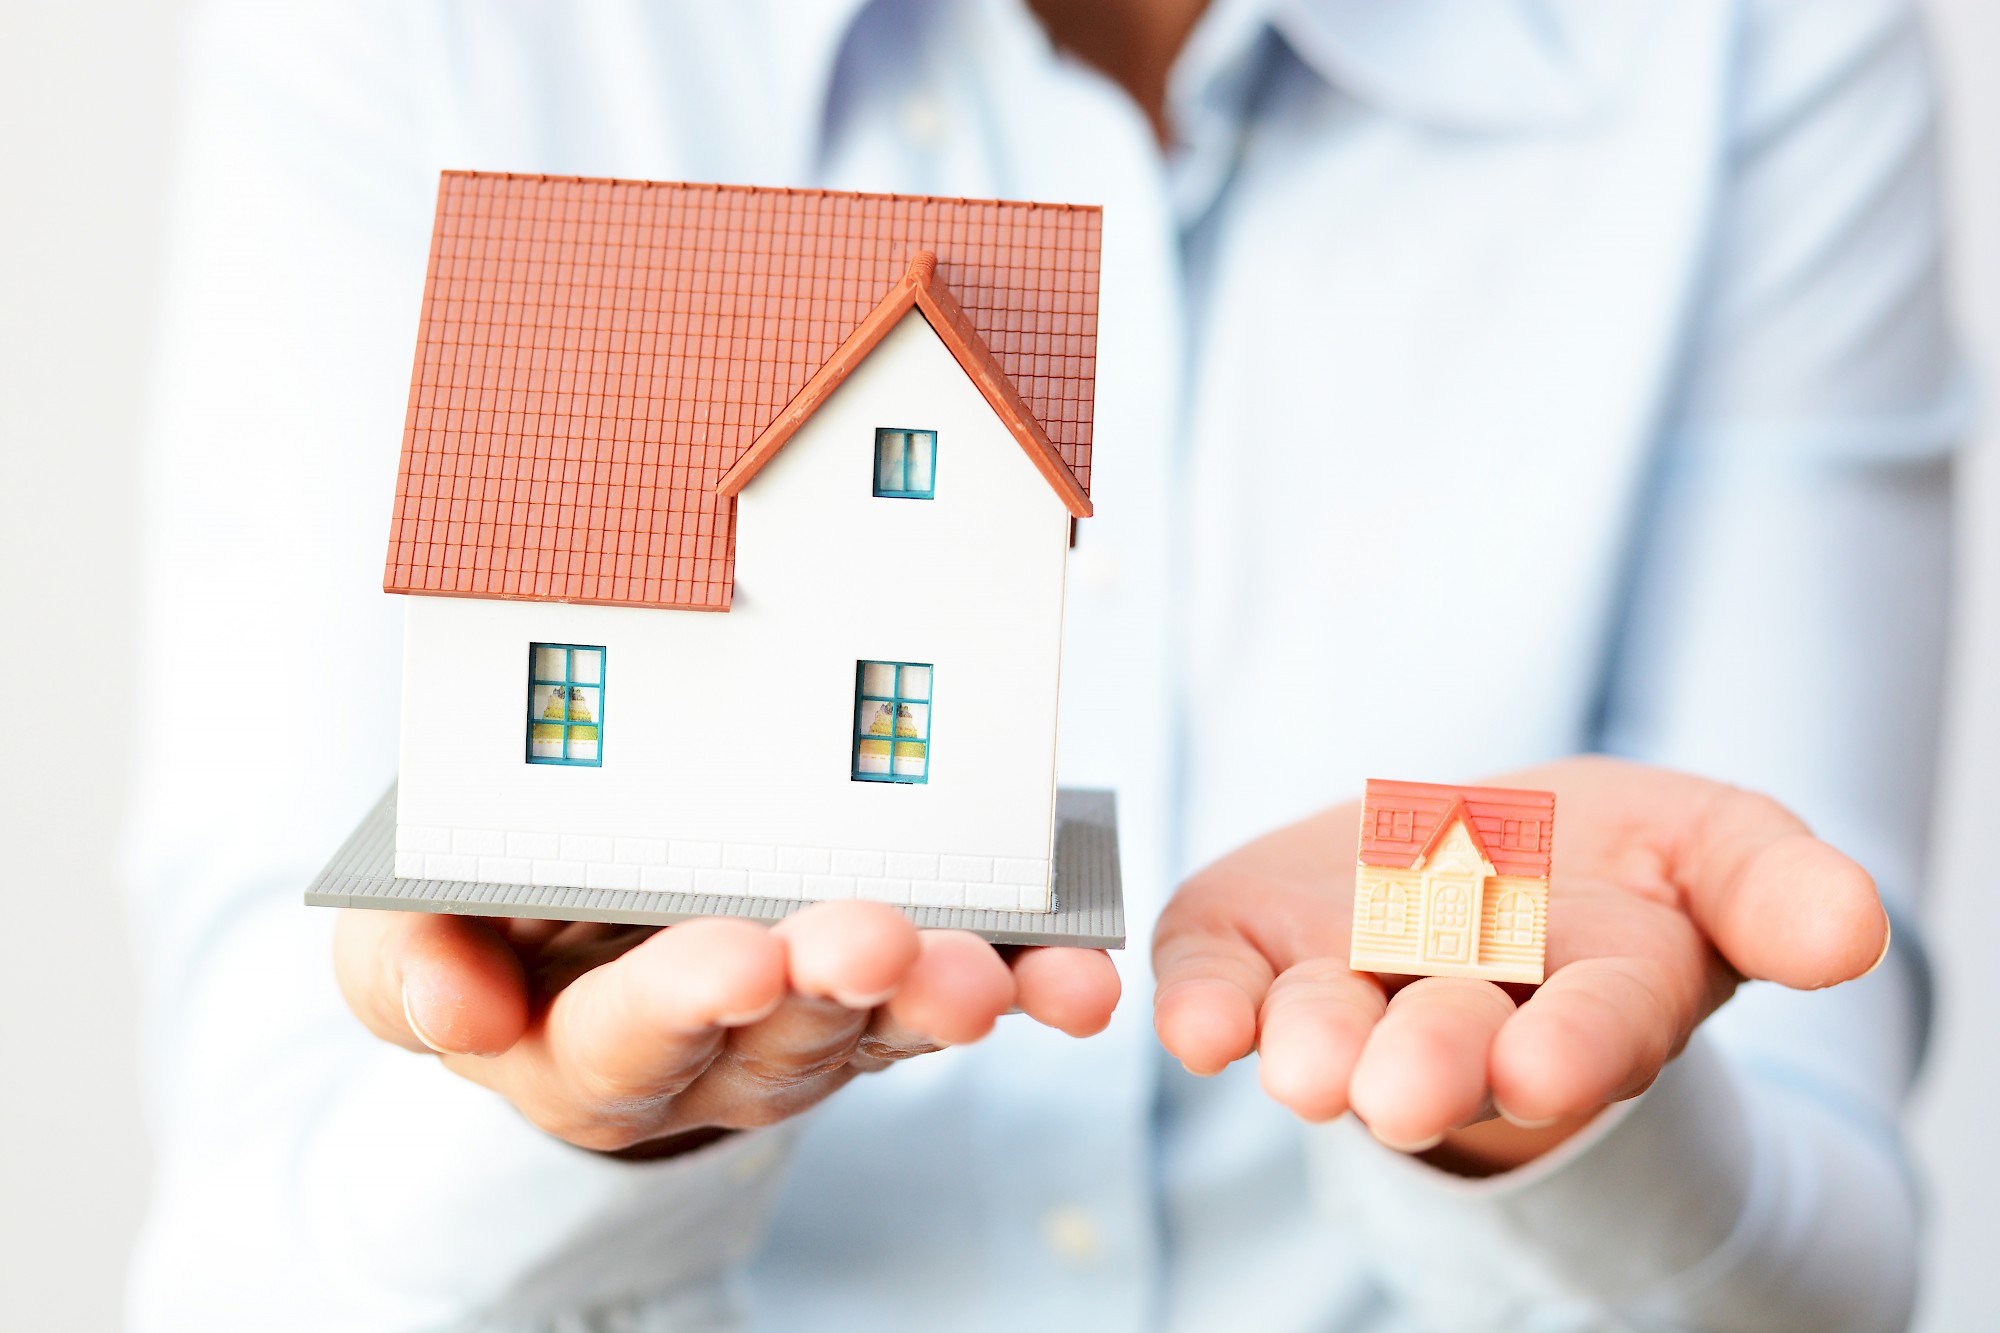 Rekening houden met grotere verschillen regionale huizenprijzen?